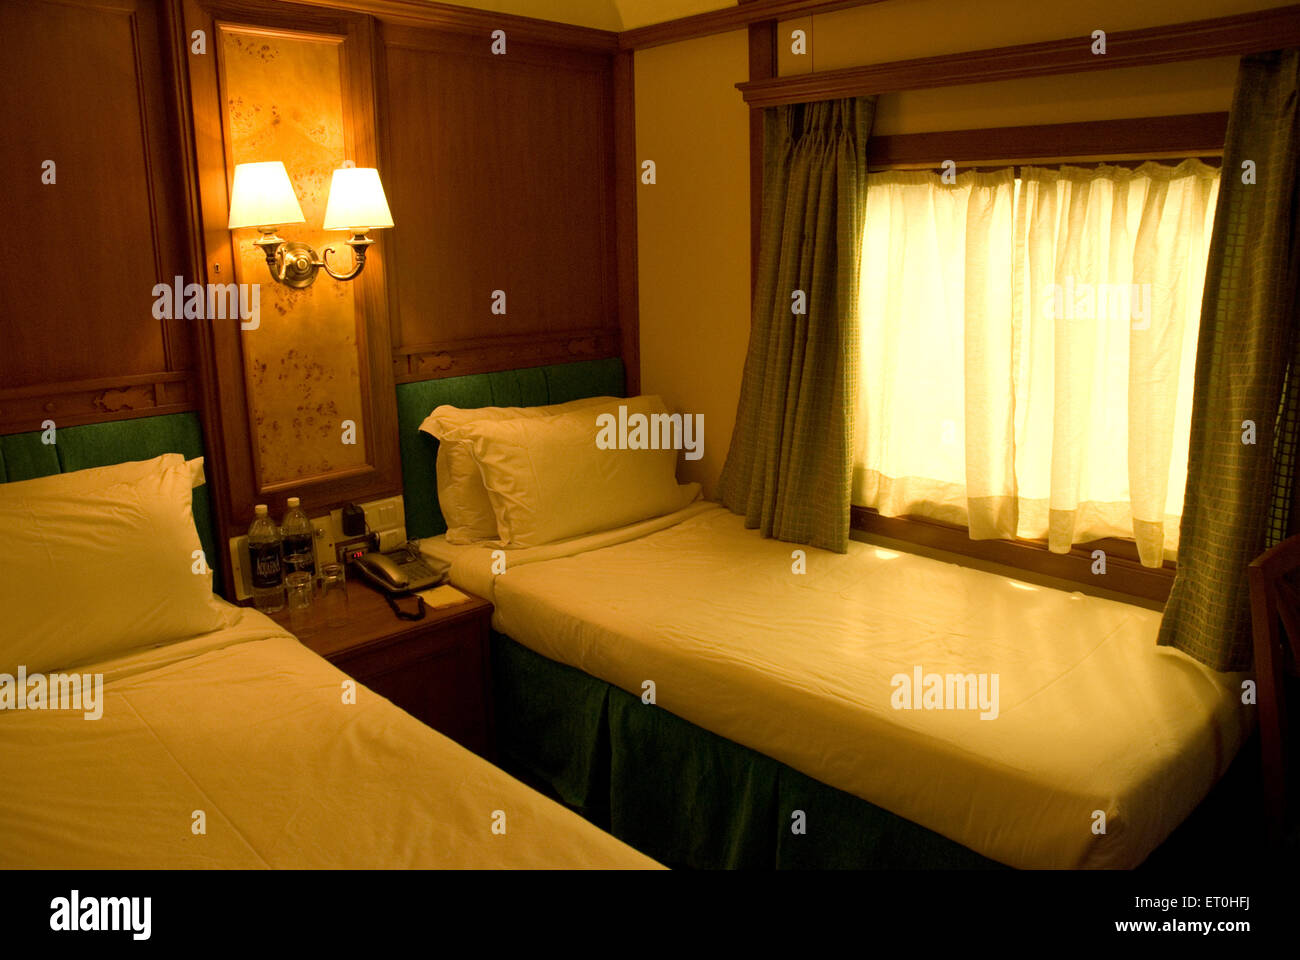 Interior de dormitorio de lujo odysy deccan en trenes de Bombay ; ; ; ; La India Mumbai Maharashtra Foto de stock